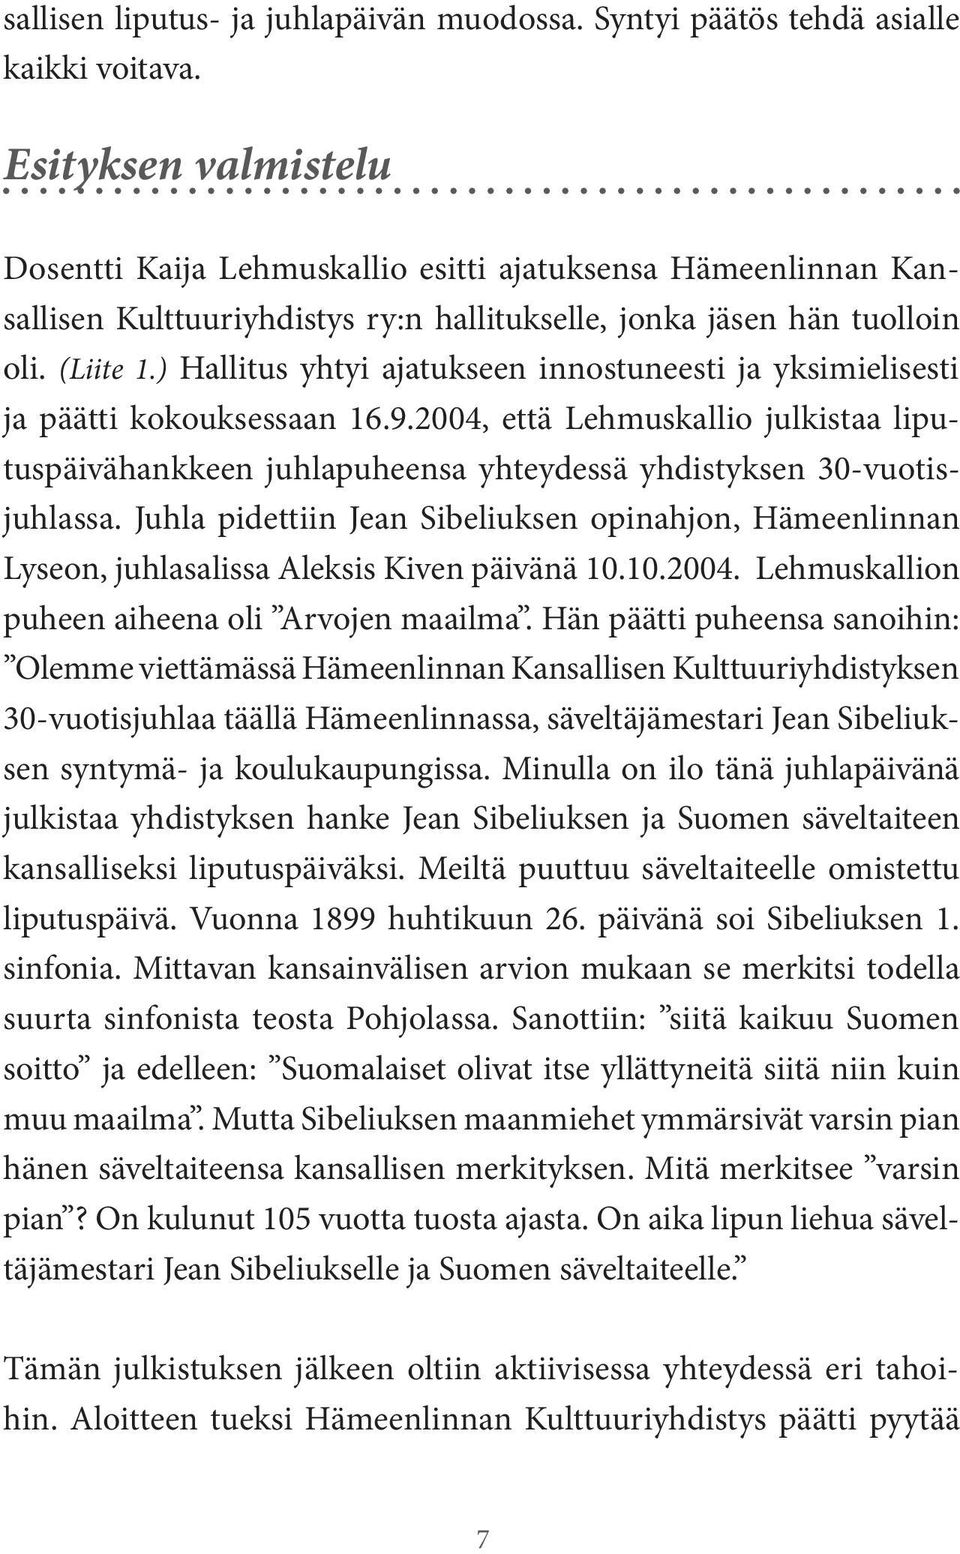 ) Hallitus yhtyi ajatukseen innostuneesti ja yksimielisesti ja päätti kokouksessaan 16.9.2004, että Lehmuskallio julkistaa liputuspäivähankkeen juhlapuheensa yhteydessä yhdistyksen 30-vuotisjuhlassa.